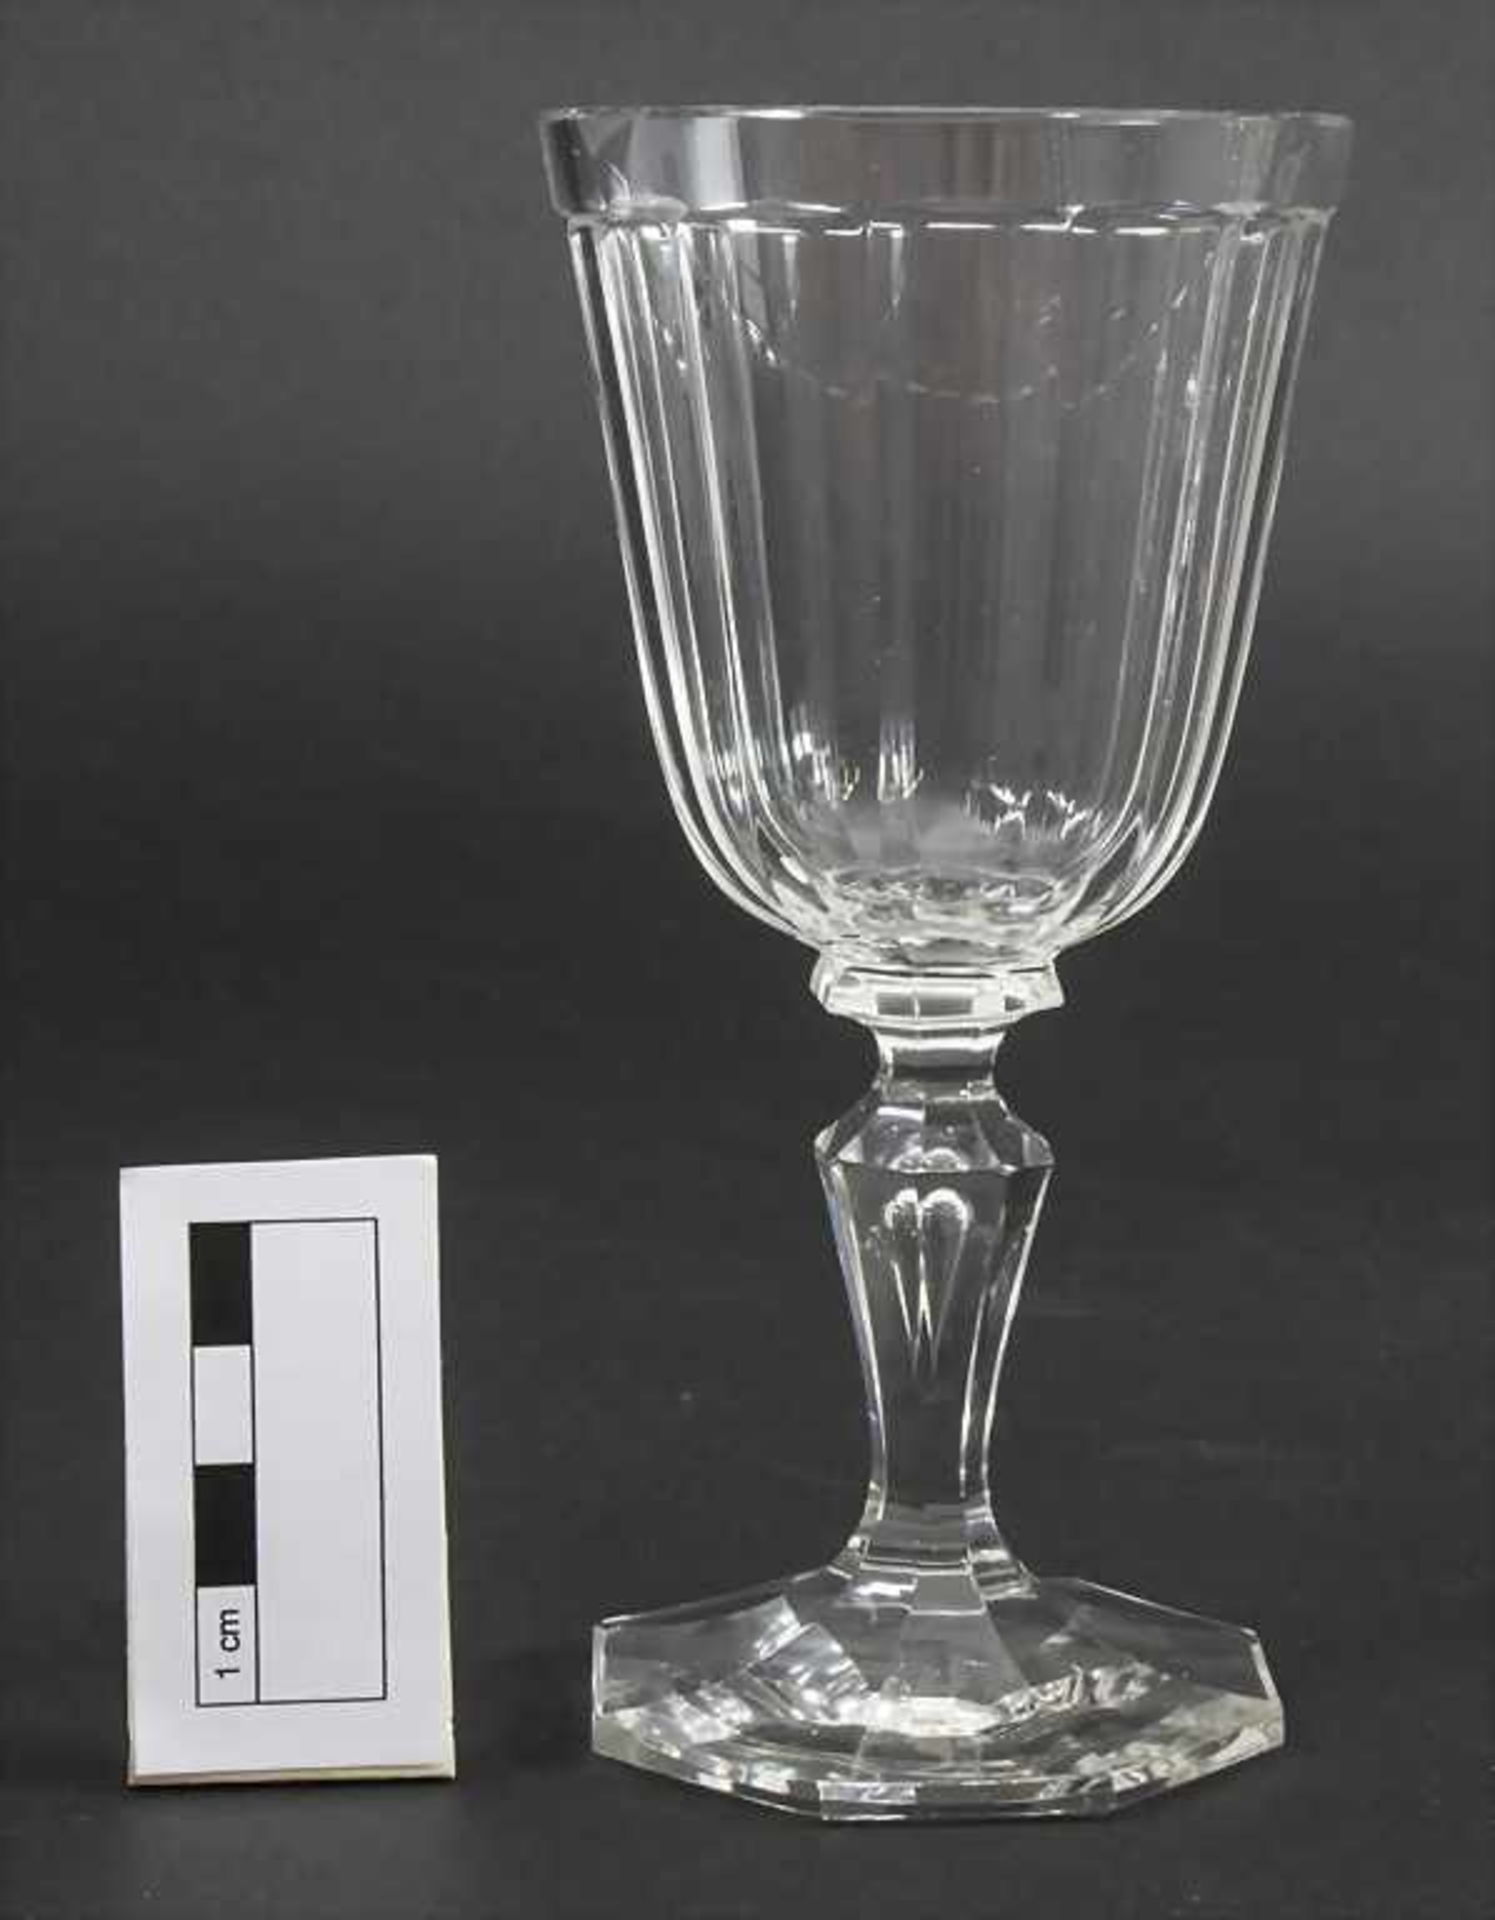 6 Rotweingläser / 6 red wine glasses, J. & L. Lobmeyr, Wien, um 1900 - Image 2 of 3